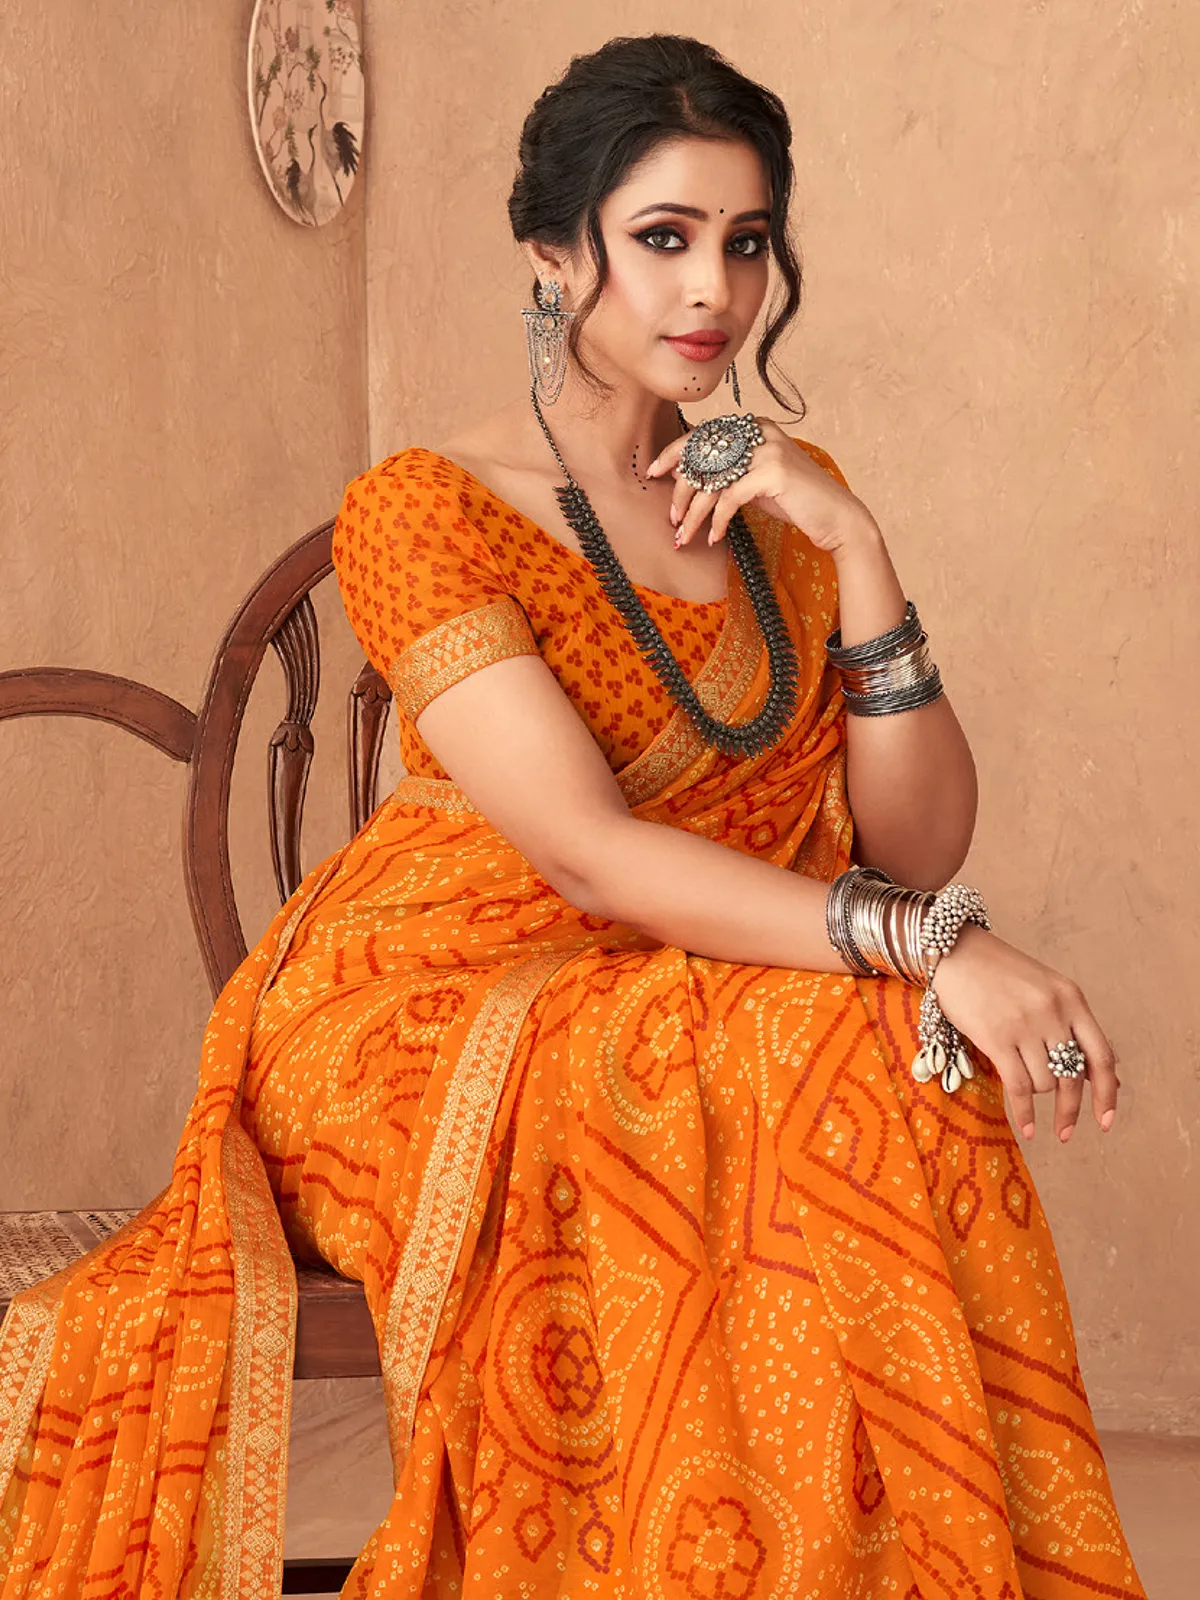 Bandhani printed orange saree